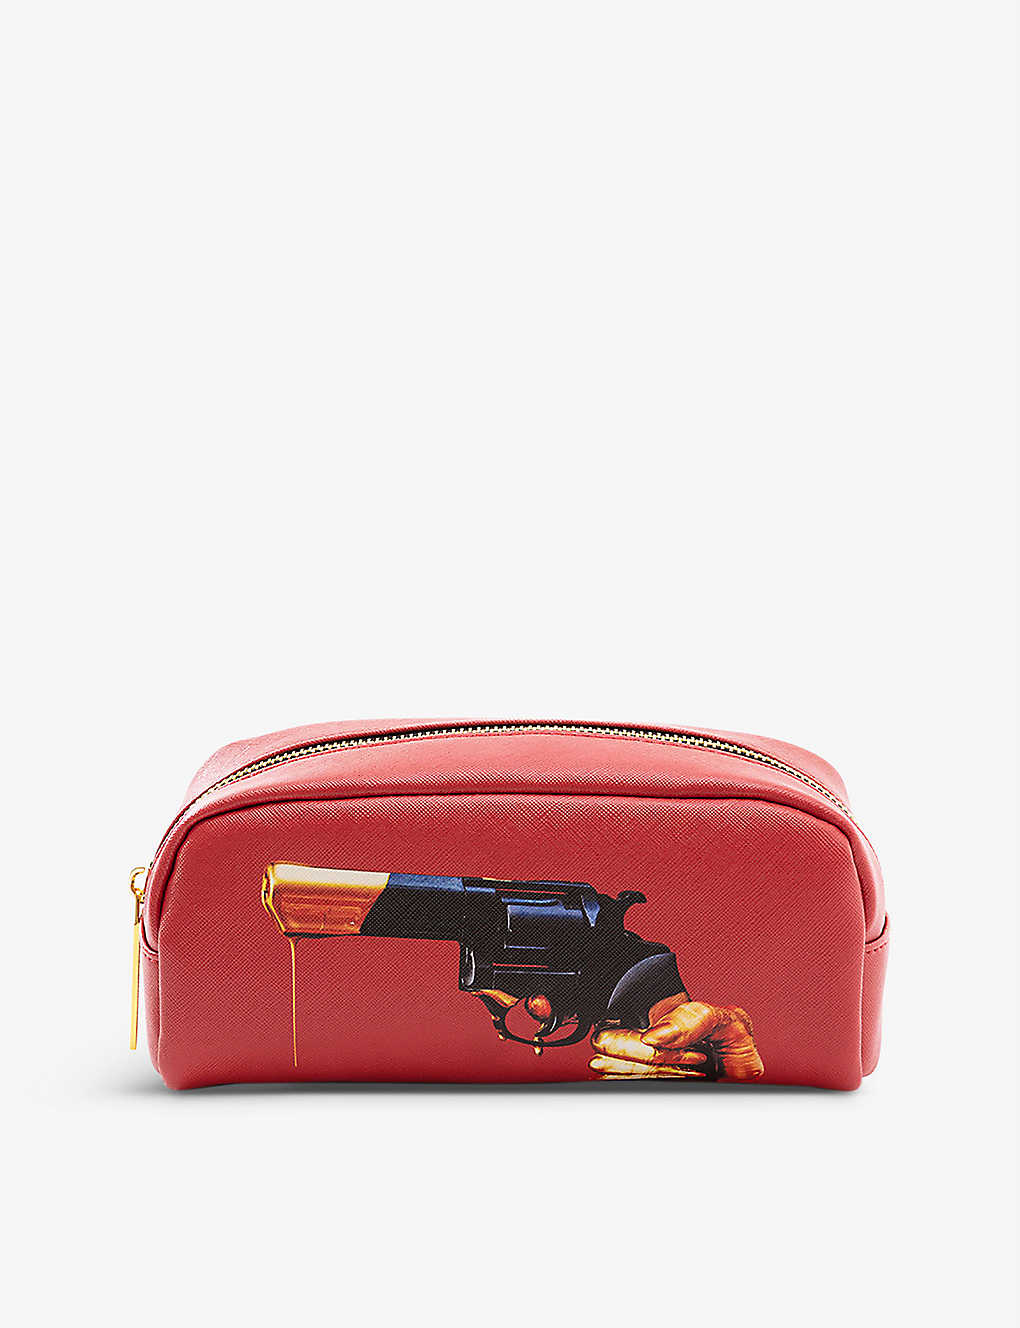 Seletti Wears Toilerpaper Revolver Faux-leather Cosmetics Bag 20.5cm X 7cm